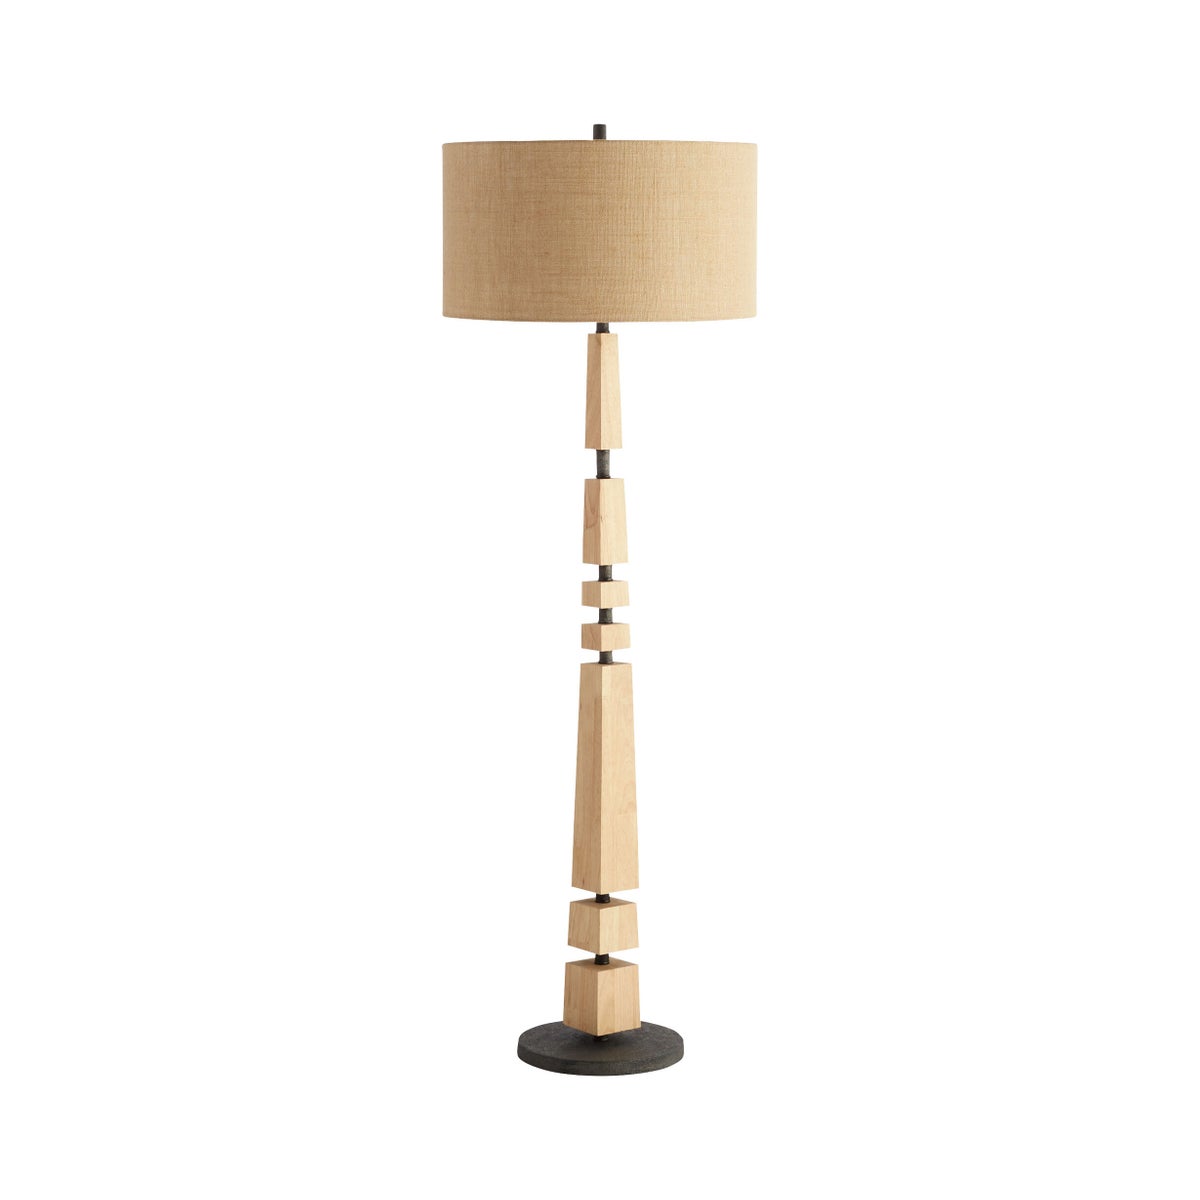 Cyan Design, Adonis Floor Lamp - Tan